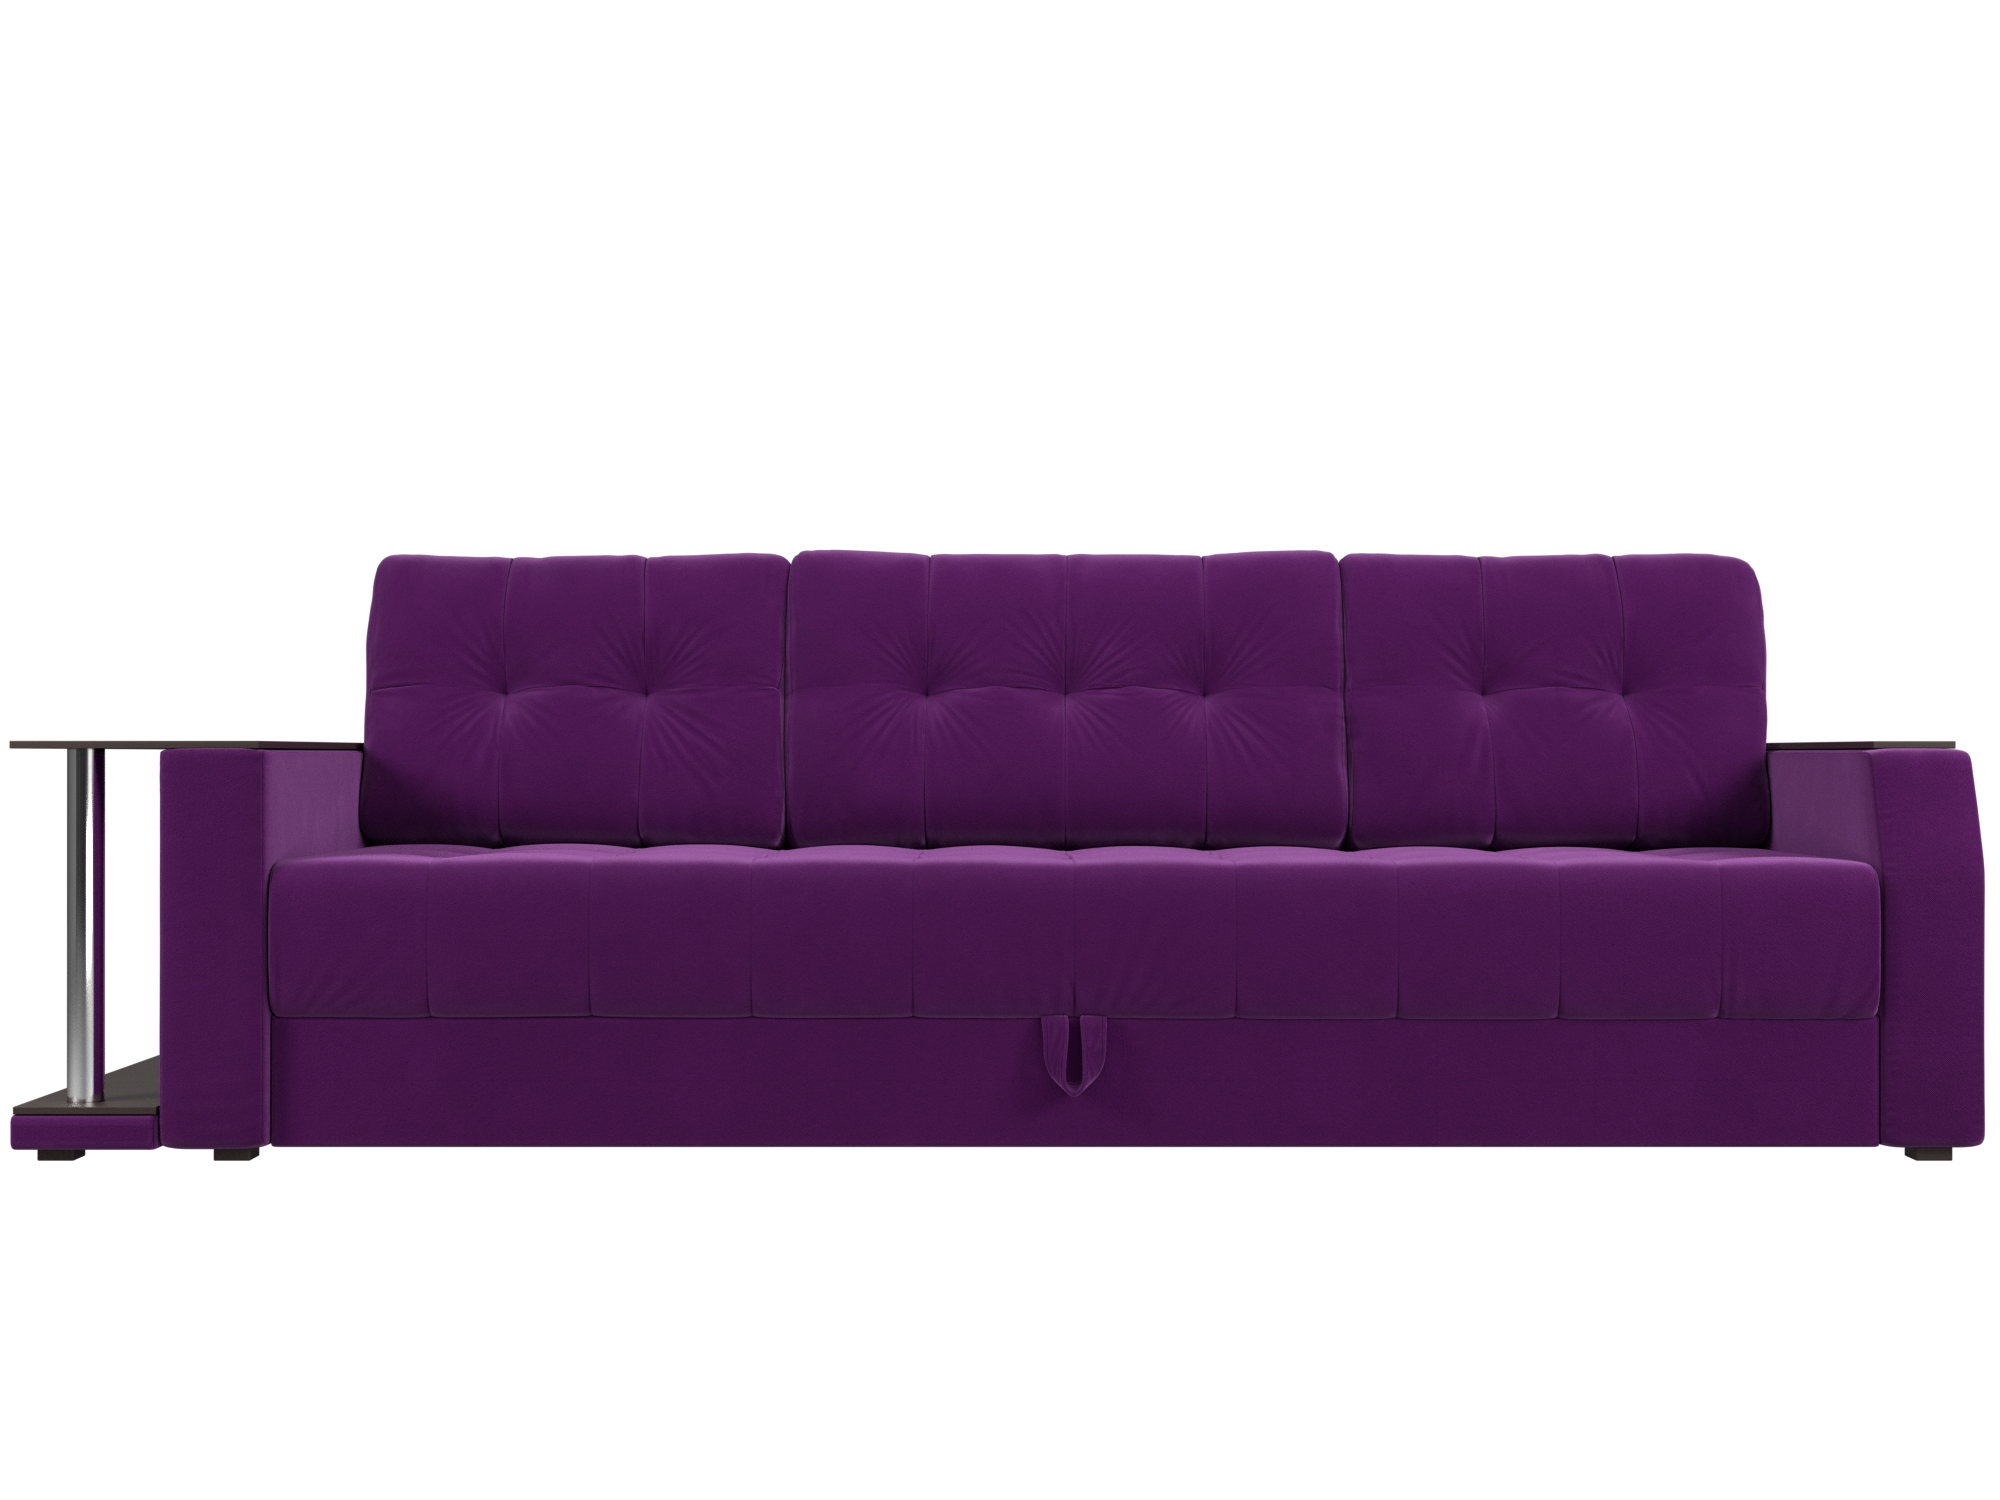 Диван-еврокнижка Атлант Левый MebelVia Фиолетовый, Микровельвет, ЛДСП диван еврокнижка мебелико сатурн микровельвет фиолетовый